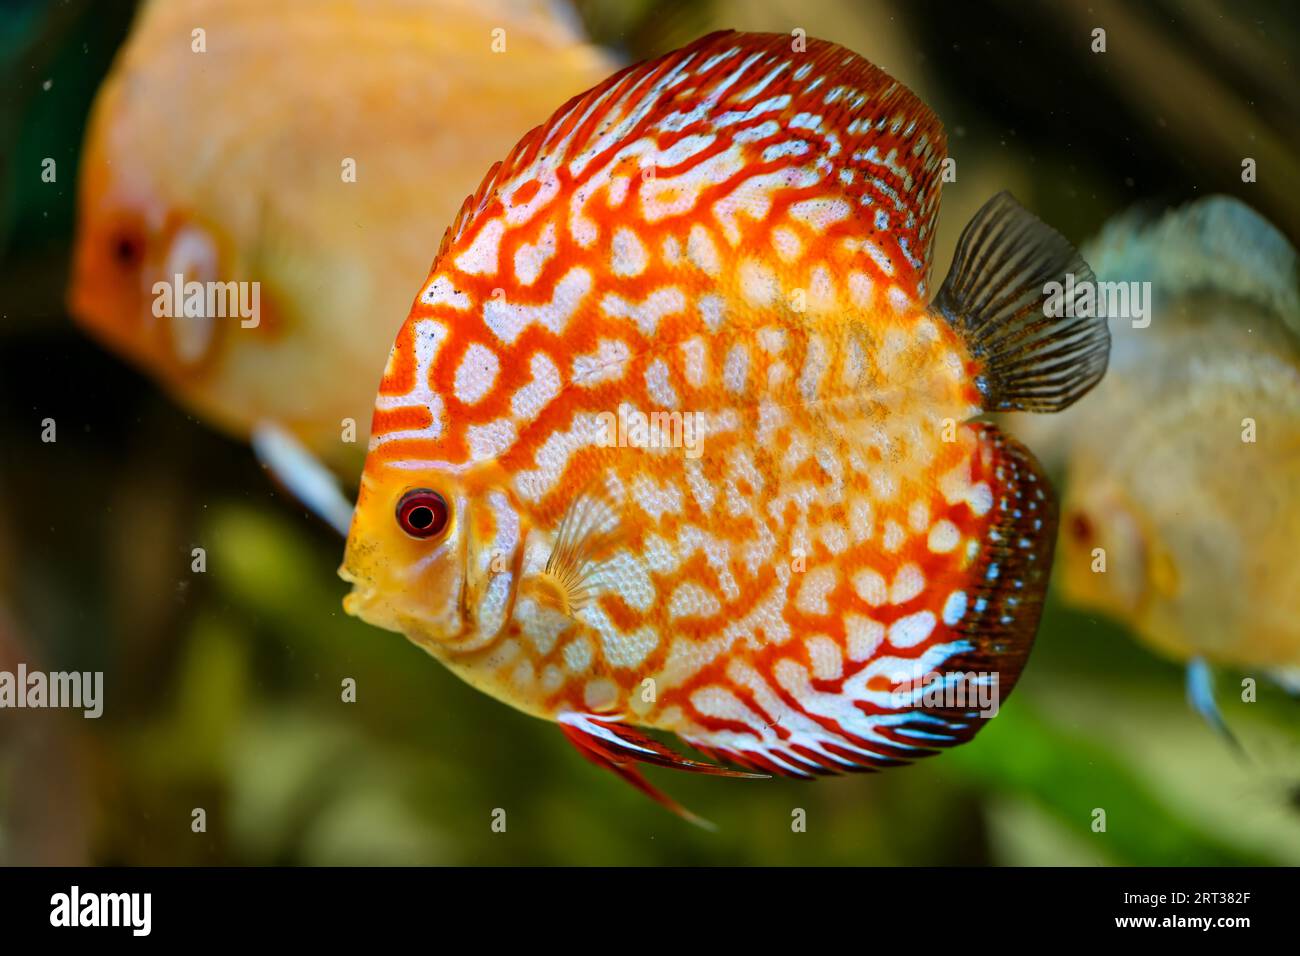 Portrait, close-up of a discus fish. Discus in the aquarium Stock Photo